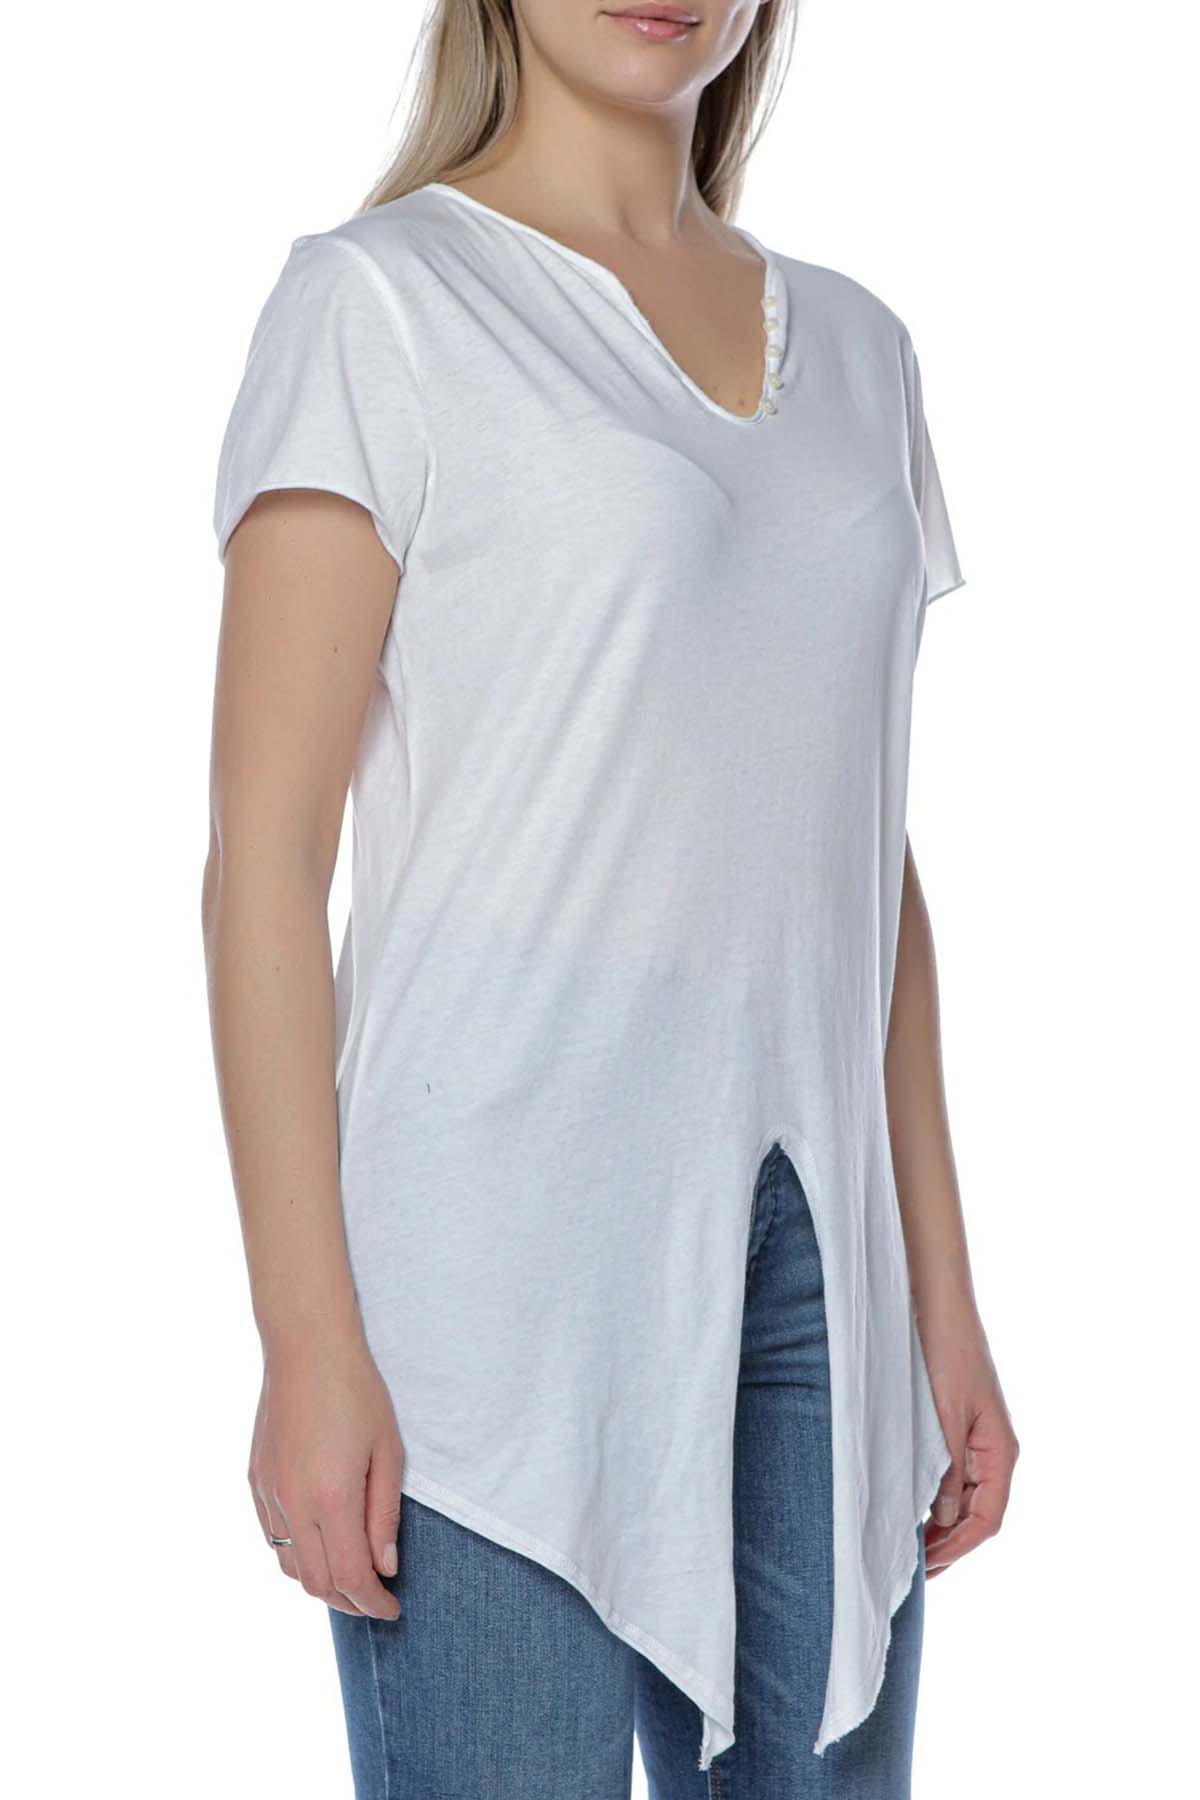 Zadig & Voltaire Etek Ucu Bağlamalı Sırtta Logo Baskılı T-shirt-Libas Trendy Fashion Store